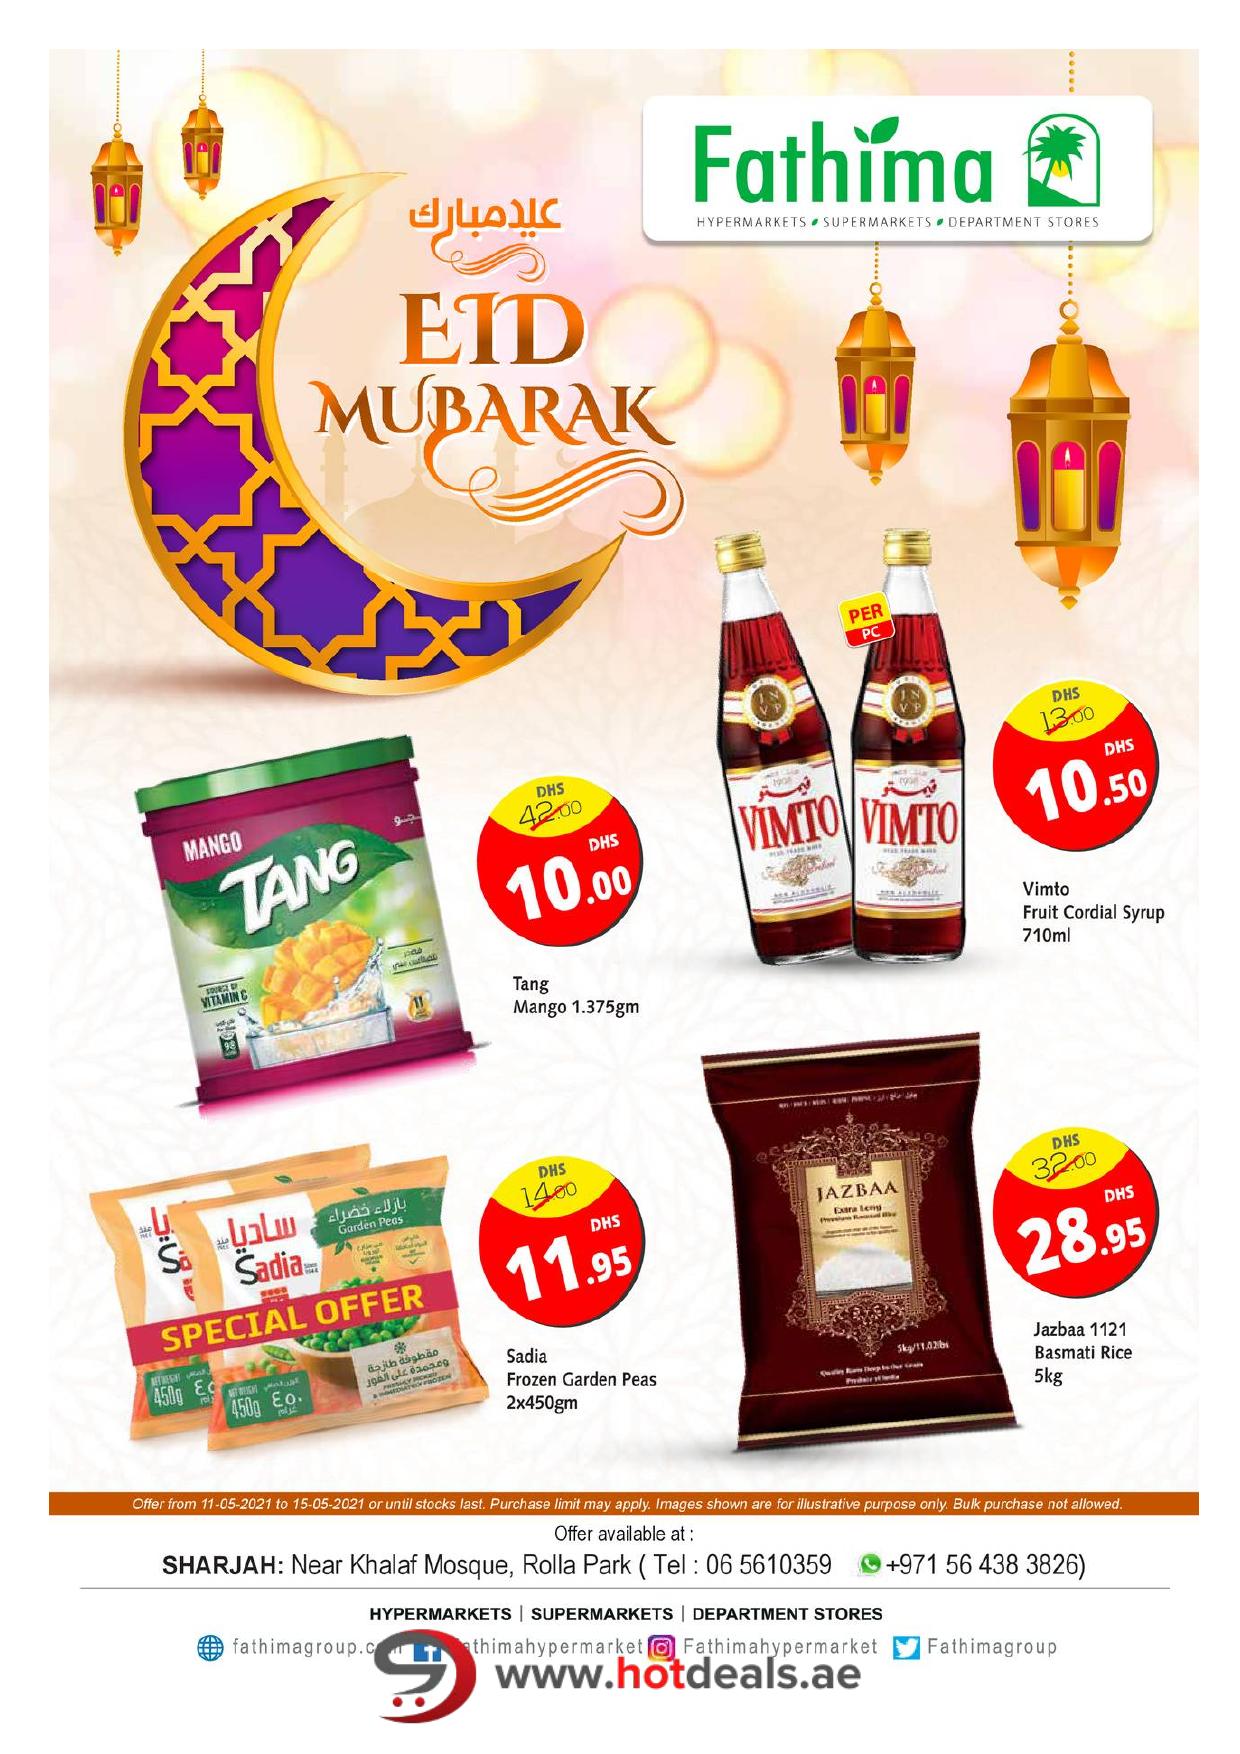 <p><span style="font-size: 18px;"><font color="#424242">Eid Deals - Sharjah</font></span><br></p>